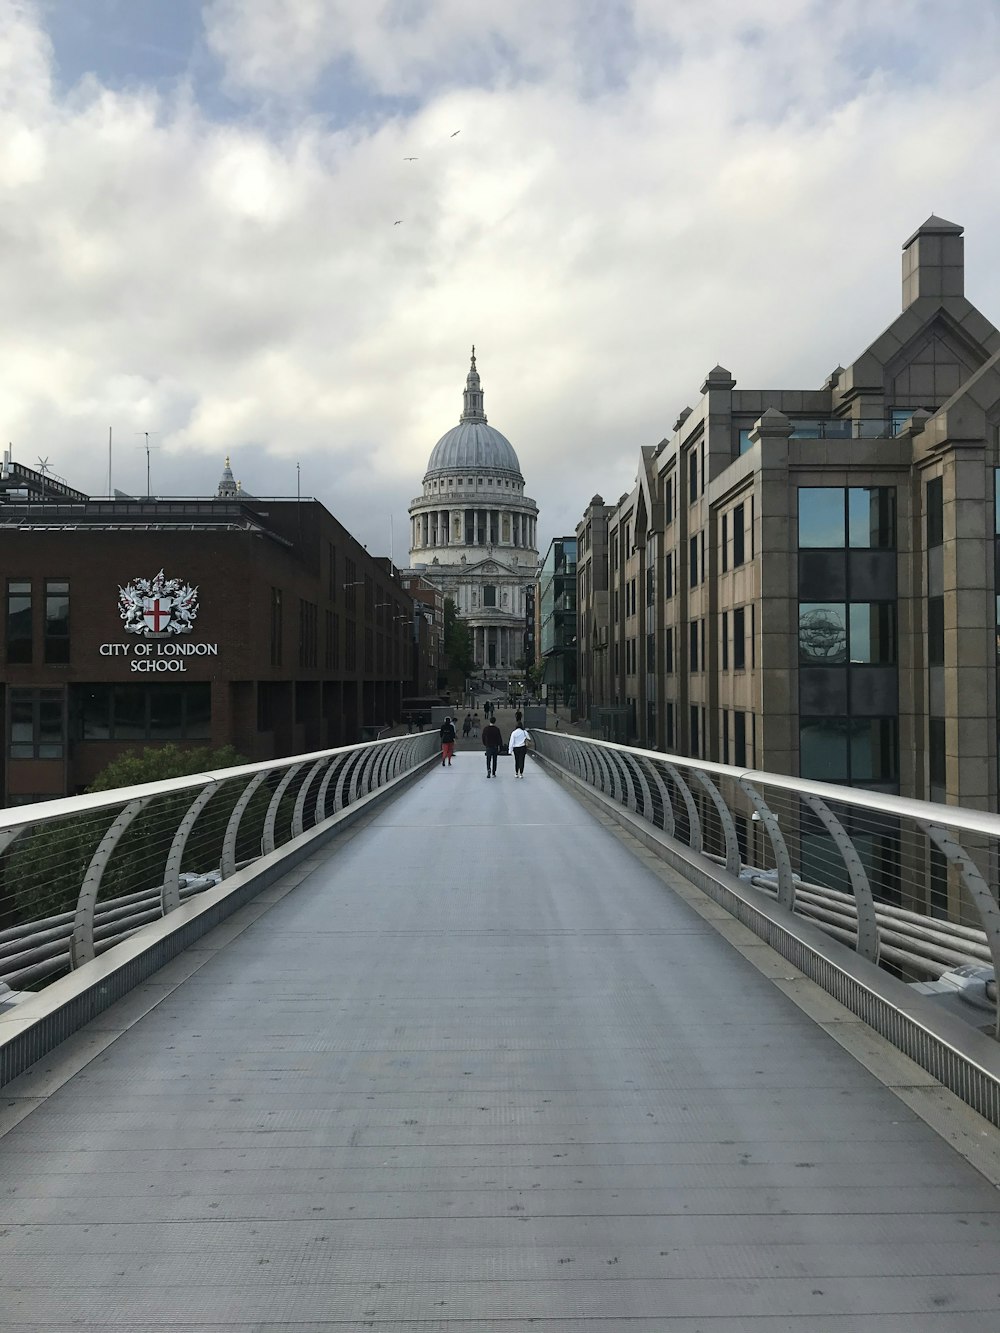 two people walking across a bridge in a city